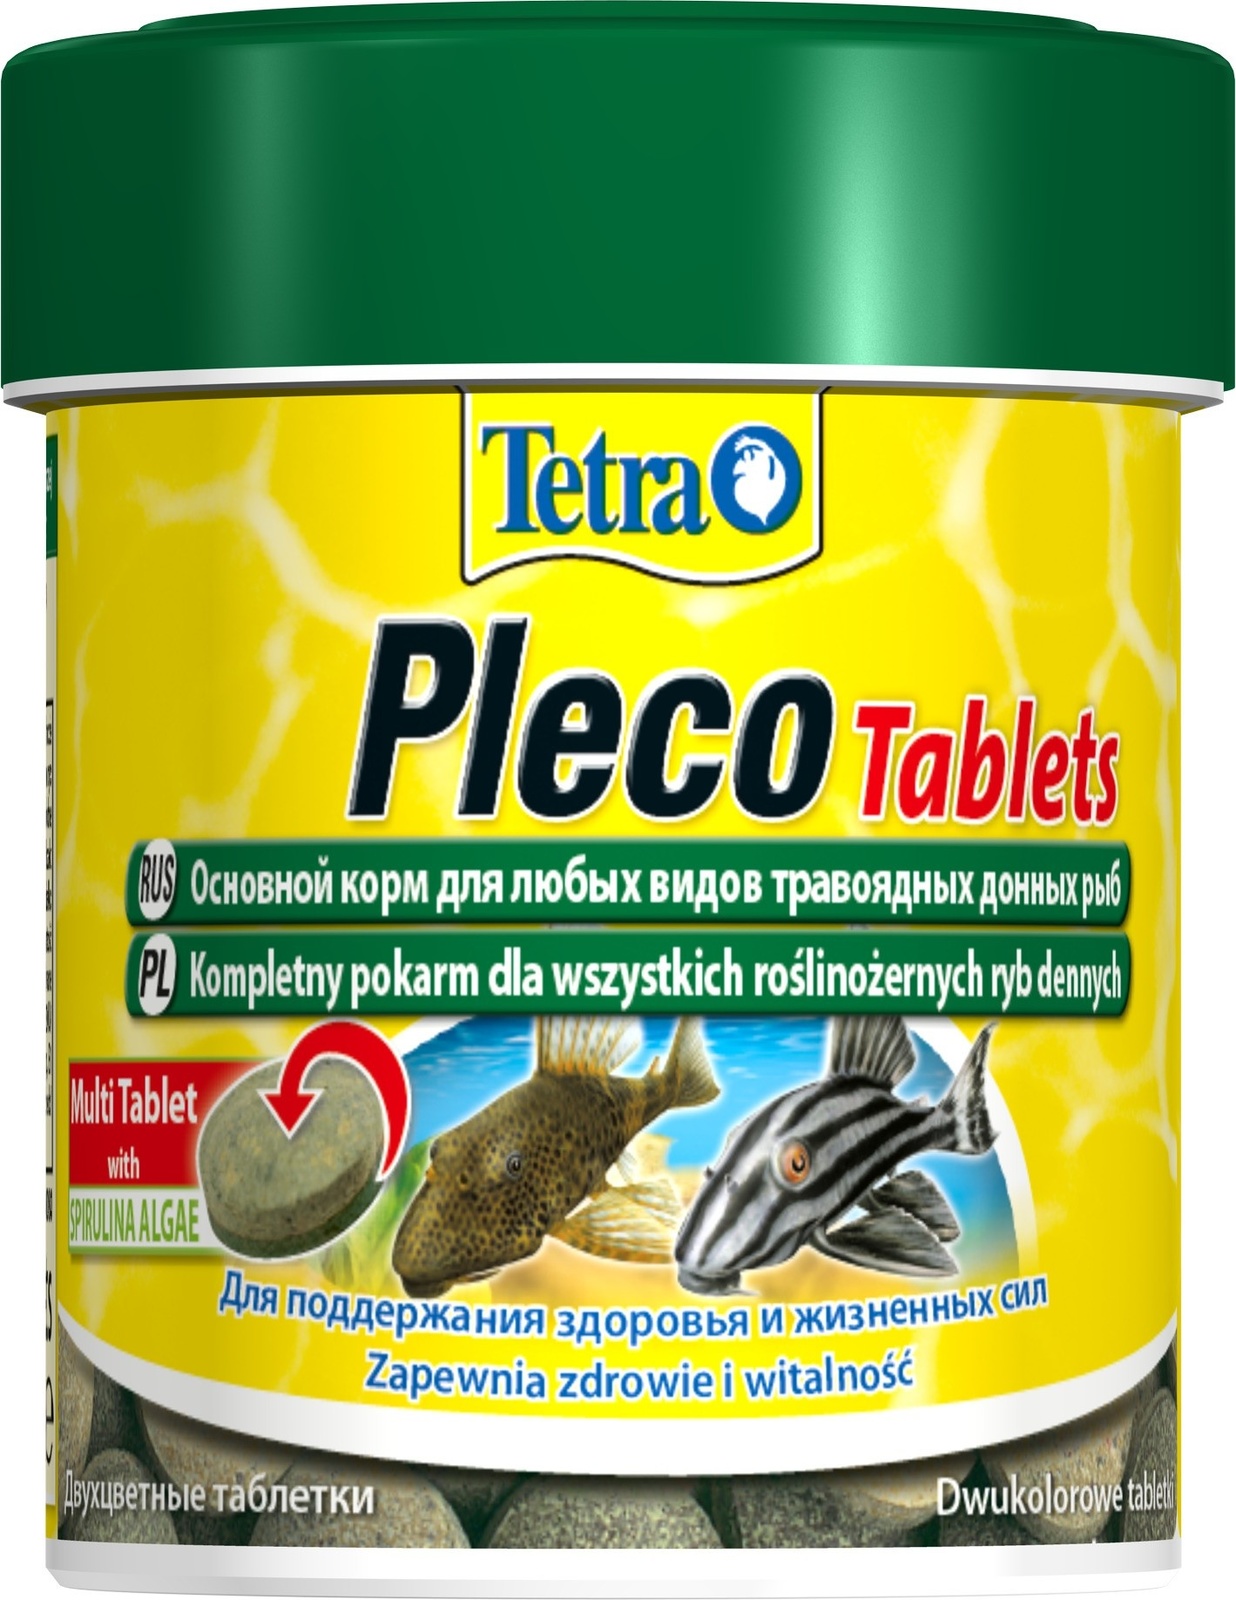 Tetra (корма) Tetra (корма) корм для травоядных донных рыб Pleco Tablets 120 табл. (36 г) tetra корма tetra корма корм для донных рыб в таблетках 85 г